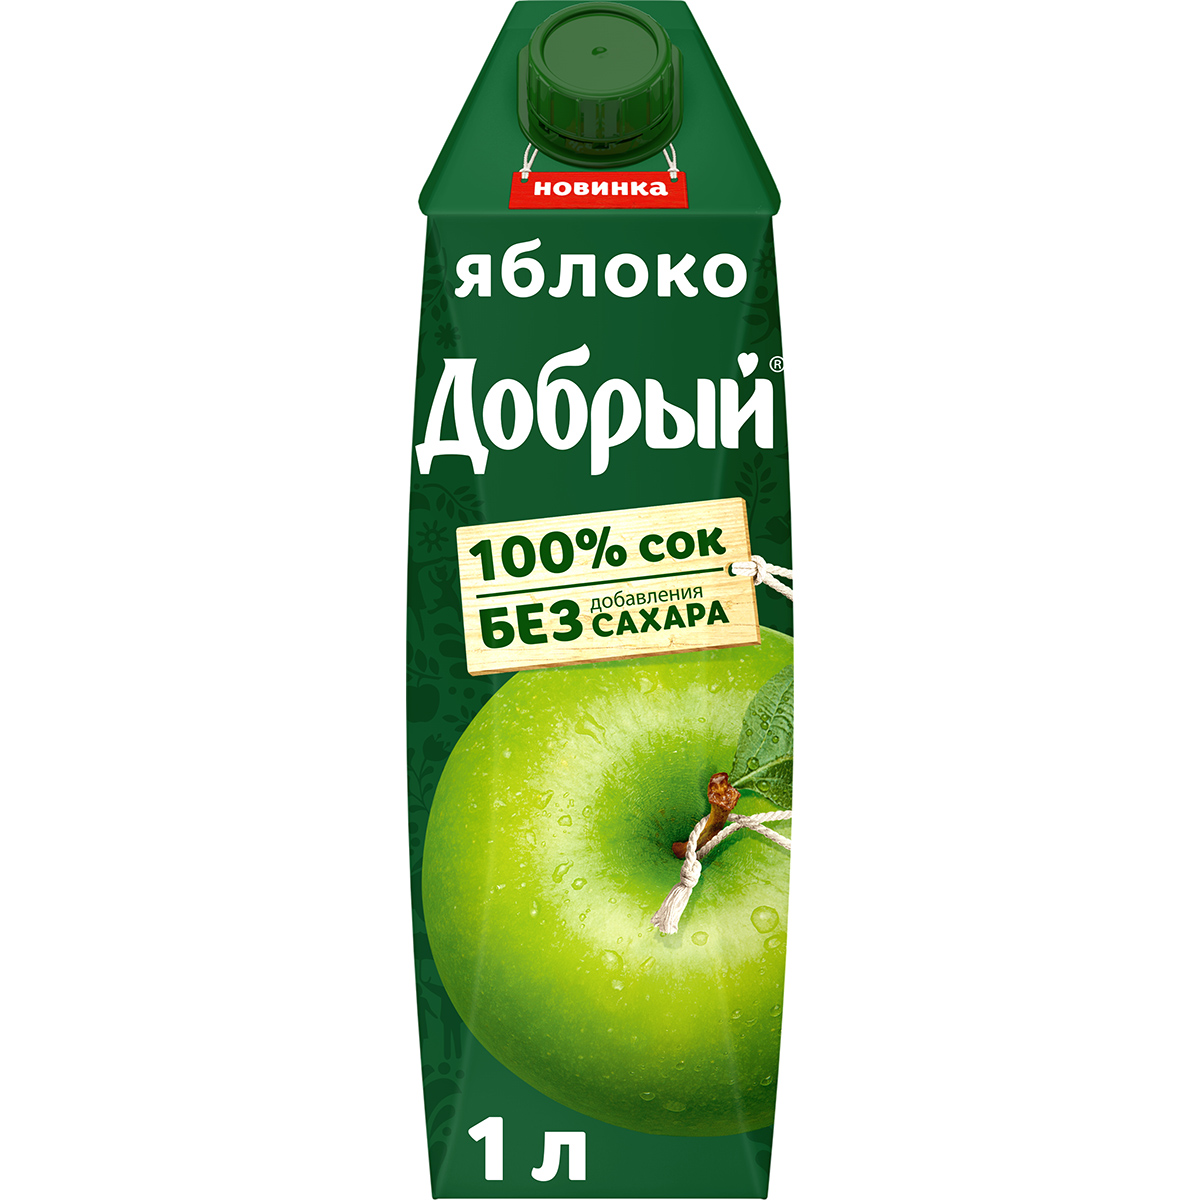 Сок Добрый яблочный осветленный 100% 1 л сок rich яблочный осветленный 100% 1 л